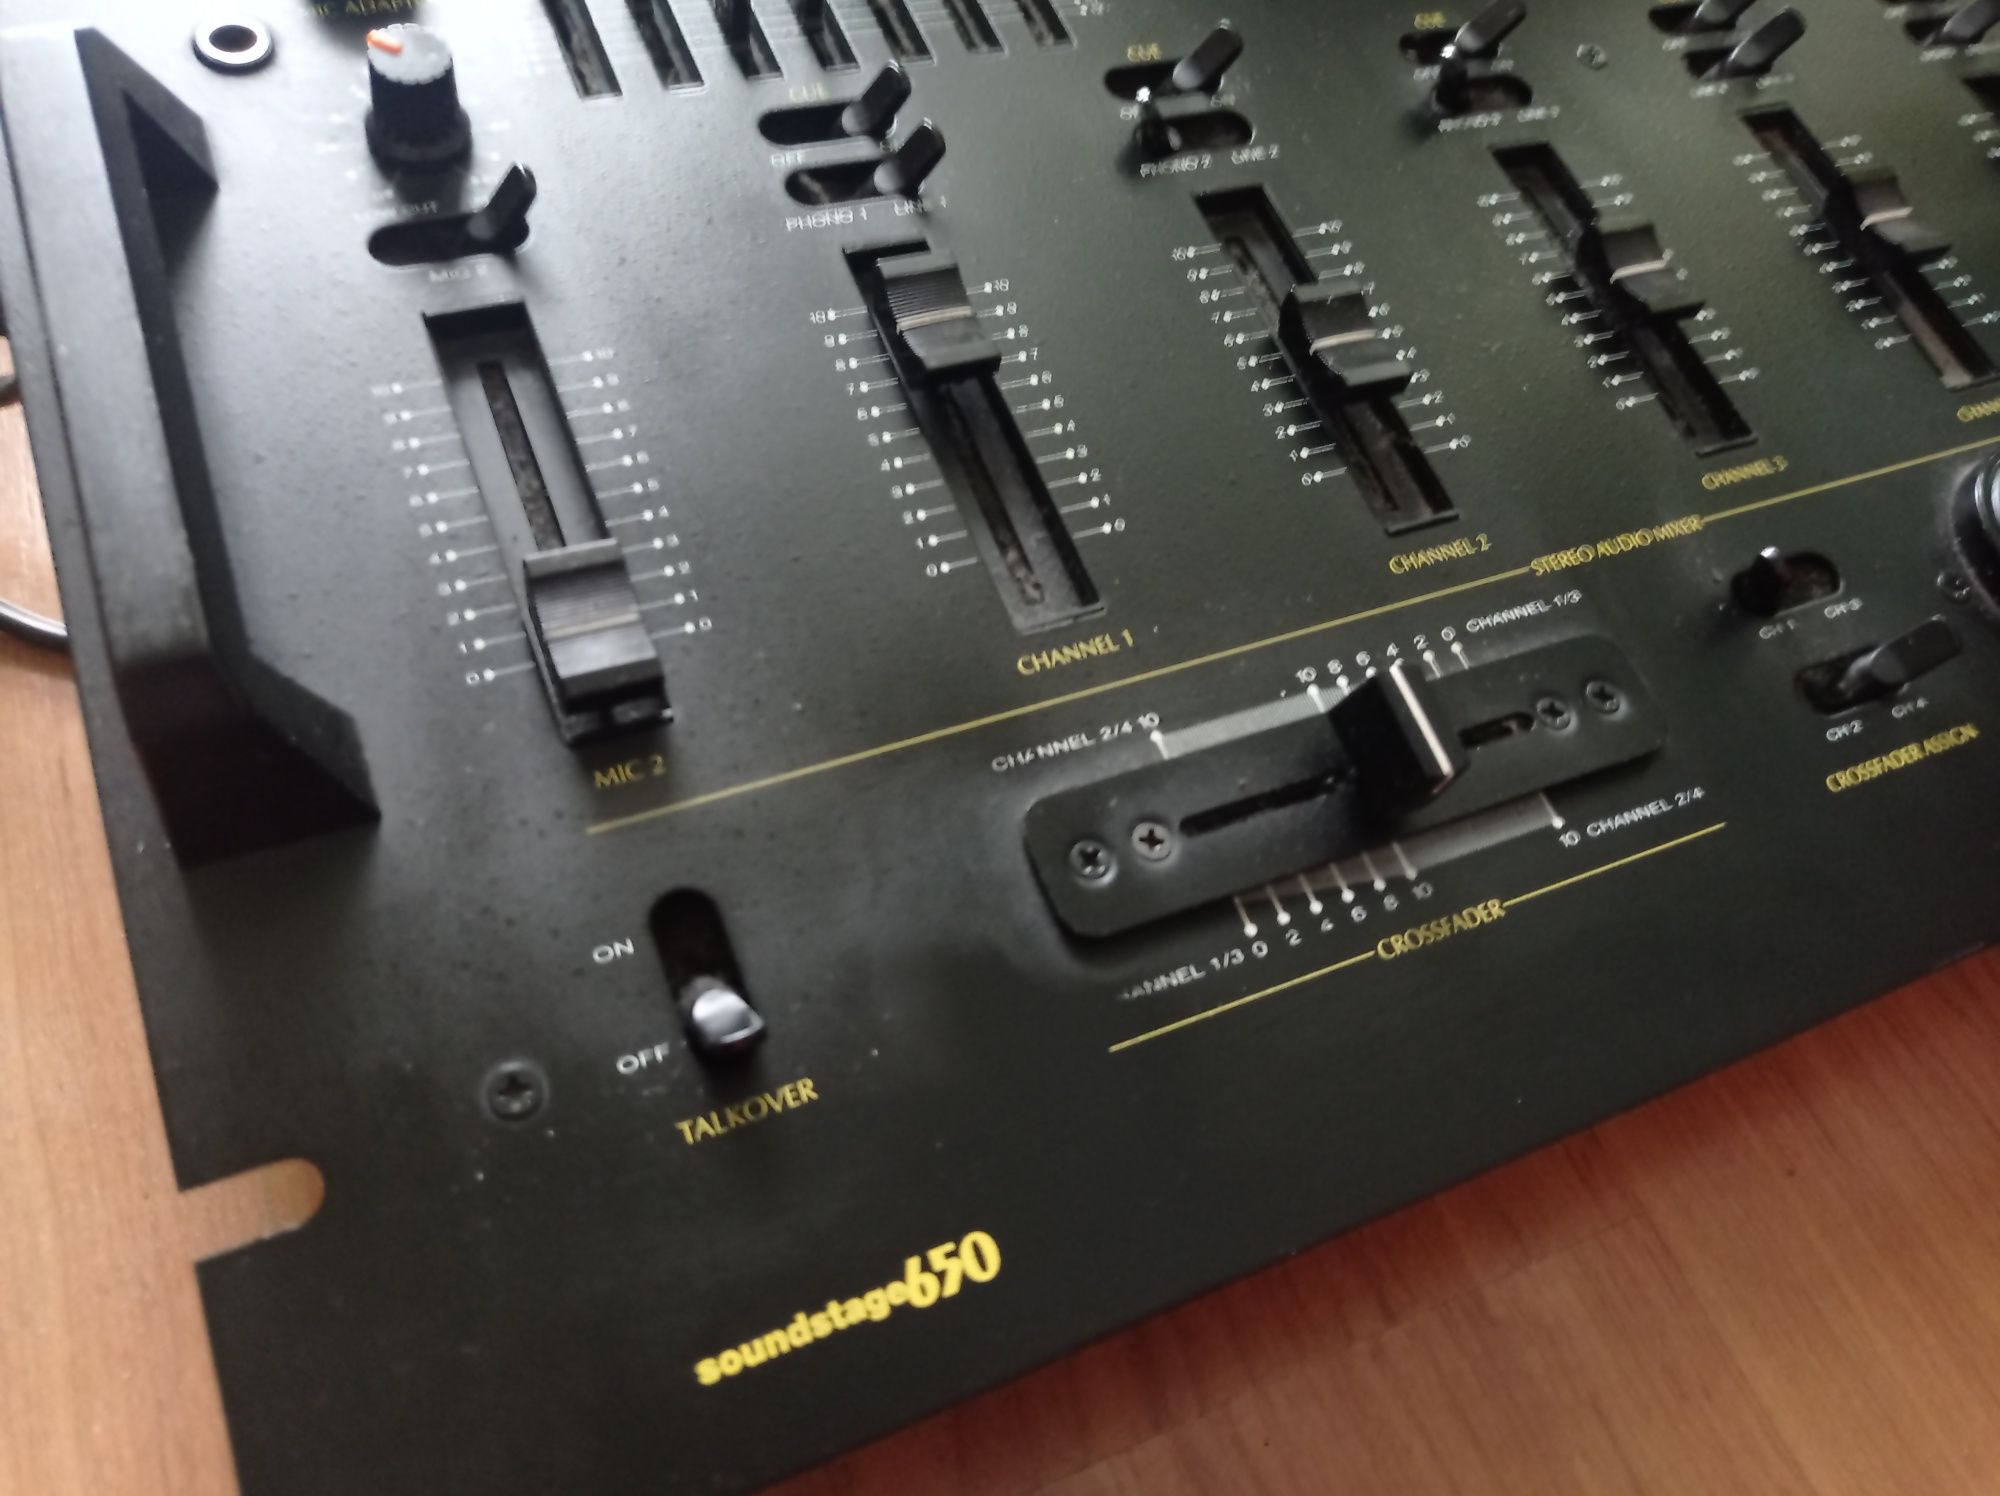 Аудио смесител Bandridge Soundstage 650